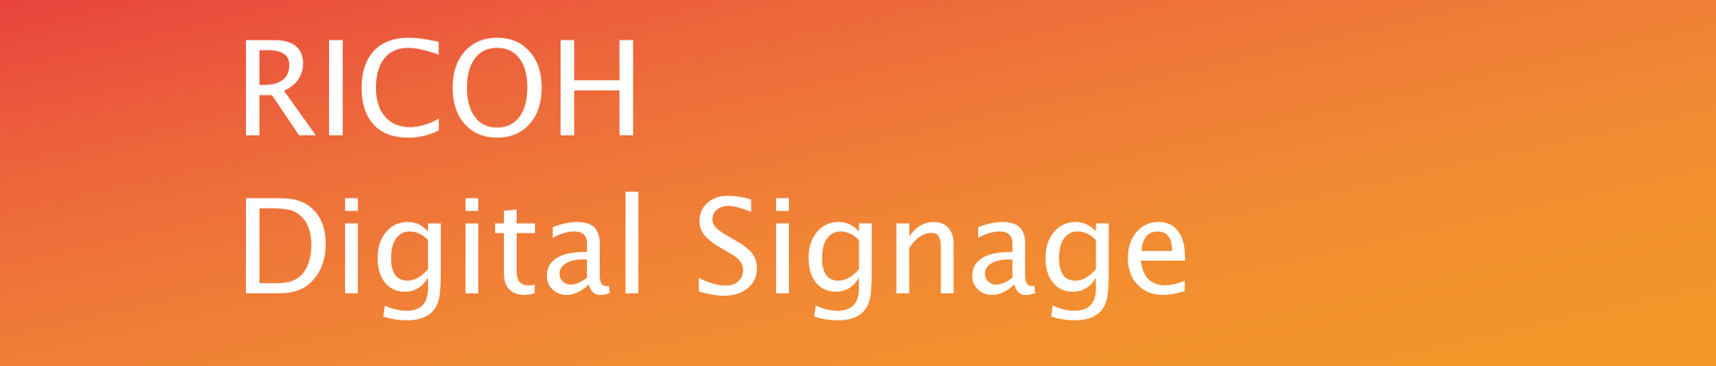 RICOH Digital Signageロゴ